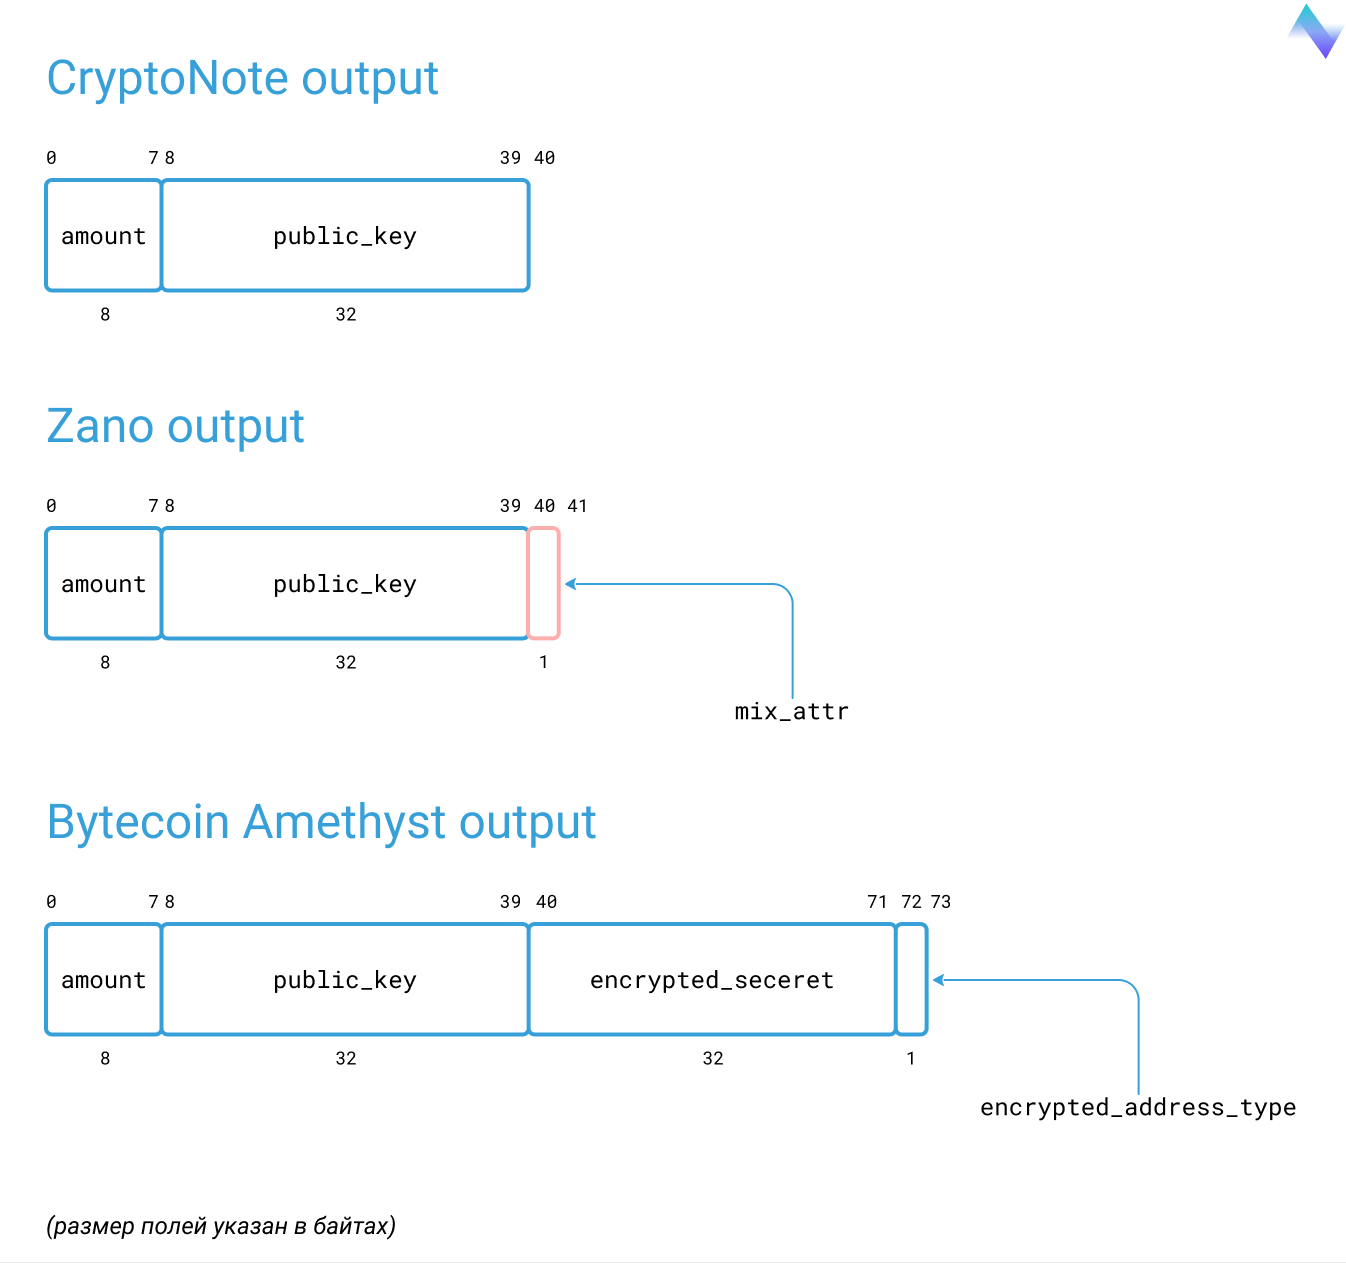 Рис. 6.1. Сравнение структуры данных для выходов транзакций CryptoNote, Zano и Bytecoin Amethyst